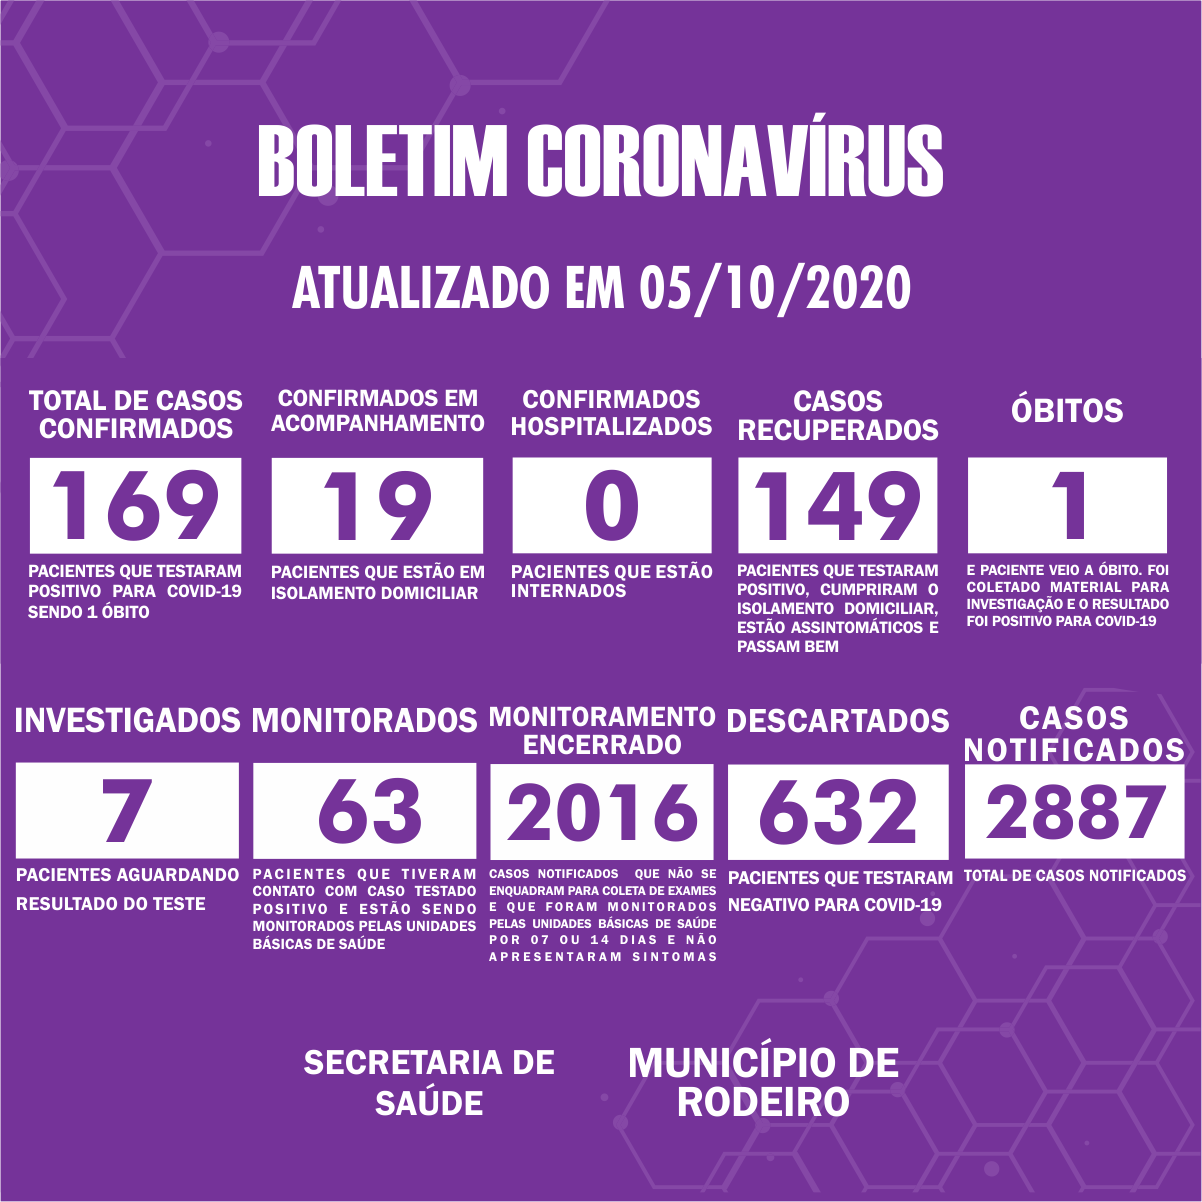 Boletim Epidemiológico do Município de Rodeiro sobre coronavírus, atualizado em 05/10/2020